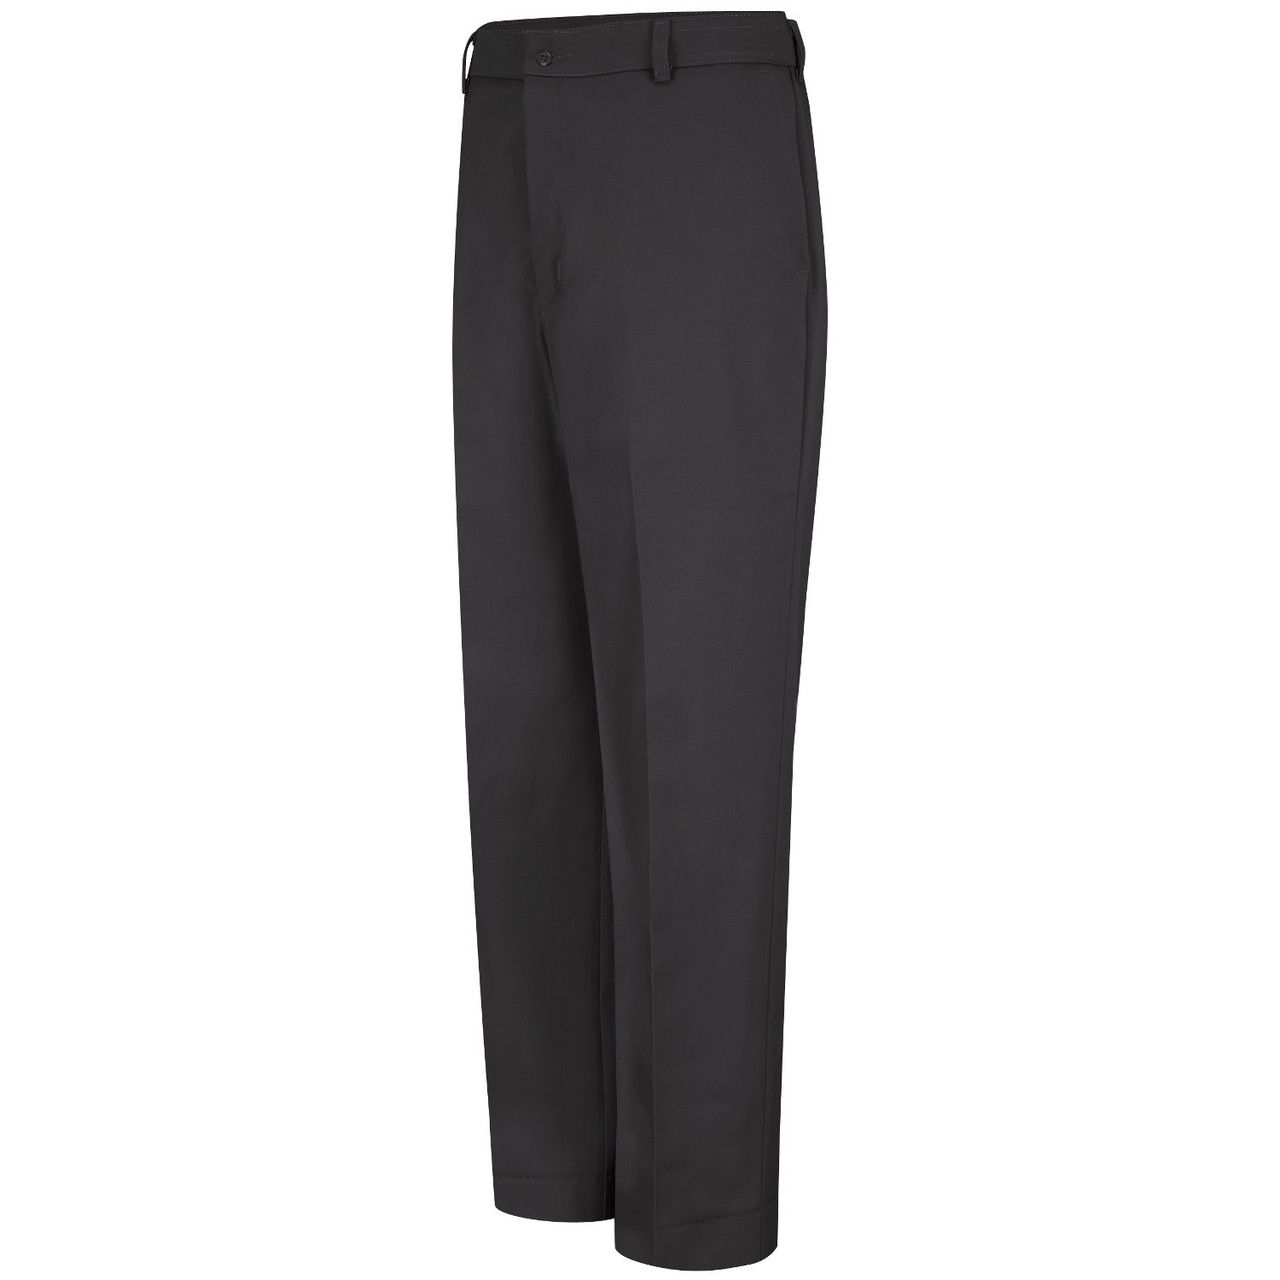 Suitable for 40°F or colder? Red Kap PT20BK Men's Dura-Kap Industrial Pants, Black